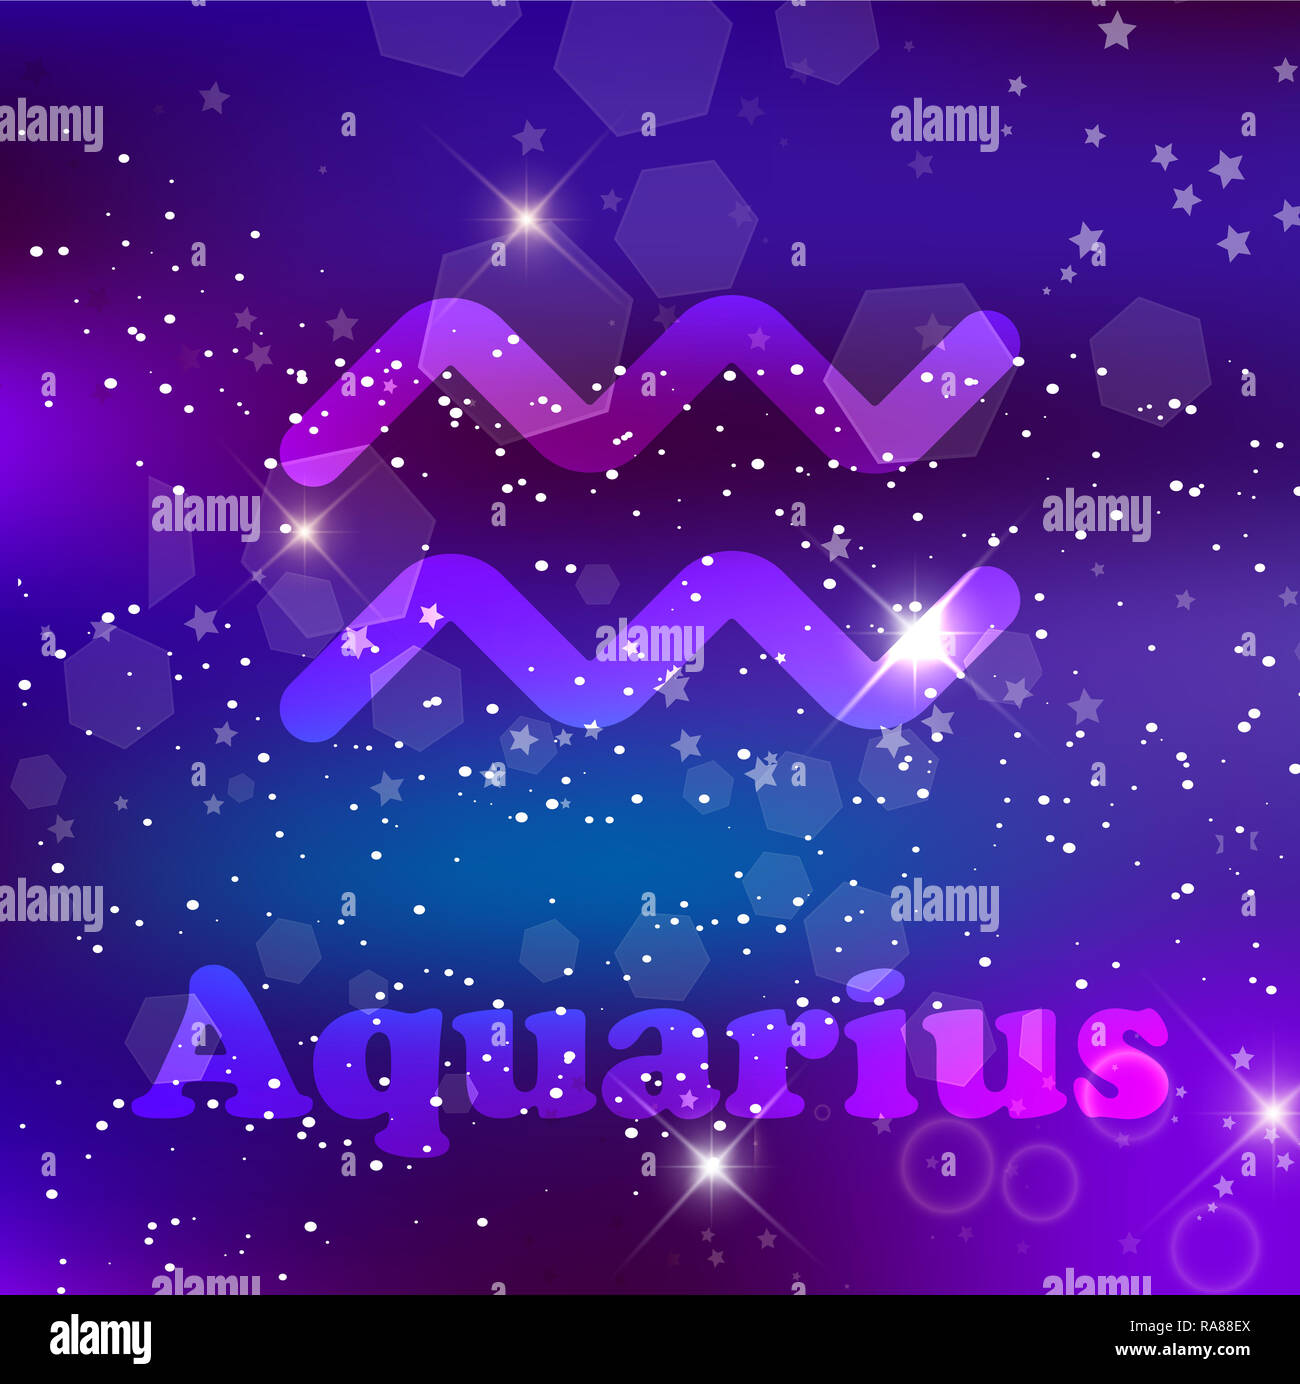 Aquarius segno zodiacale e costellazione su una cosmic blu scuro dello sfondo viola con stelle luccicanti e nebulosa. illustrazione, banner, poster, card. Sp Foto Stock